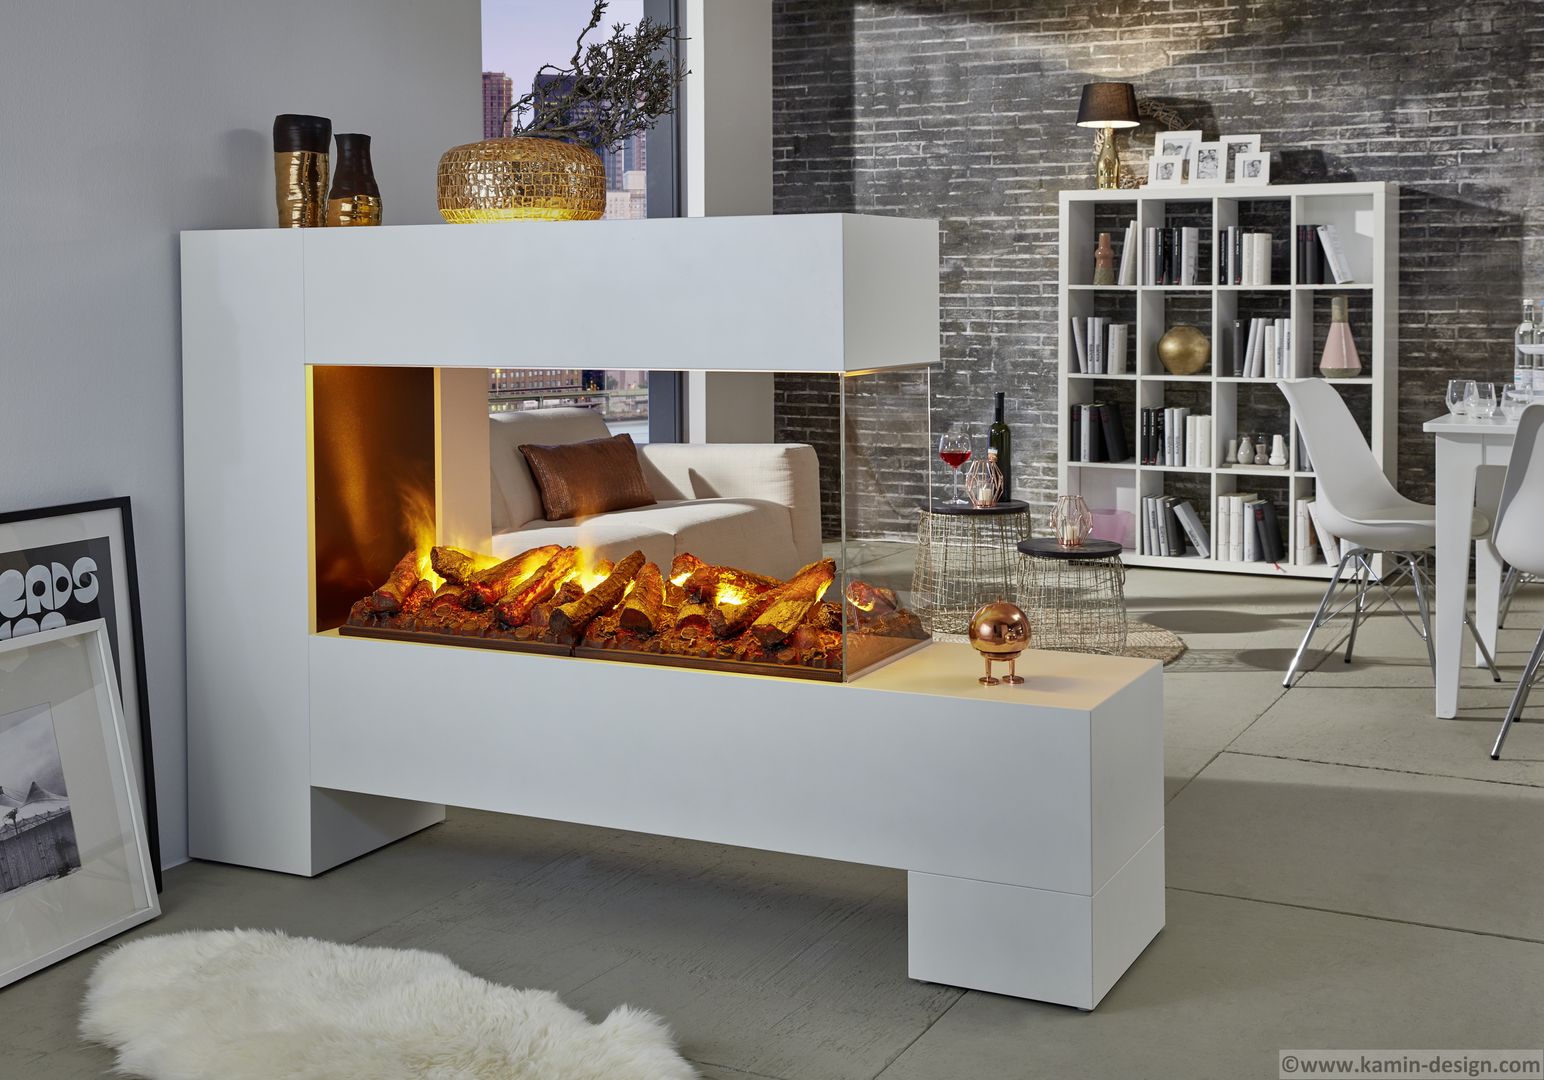 Moderne Kamine - Elektrokamine + Ethanolkamine, Kamin-Design GmbH & Co KG Kamin-Design GmbH & Co KG Modern Living Room MDF Fireplaces & accessories